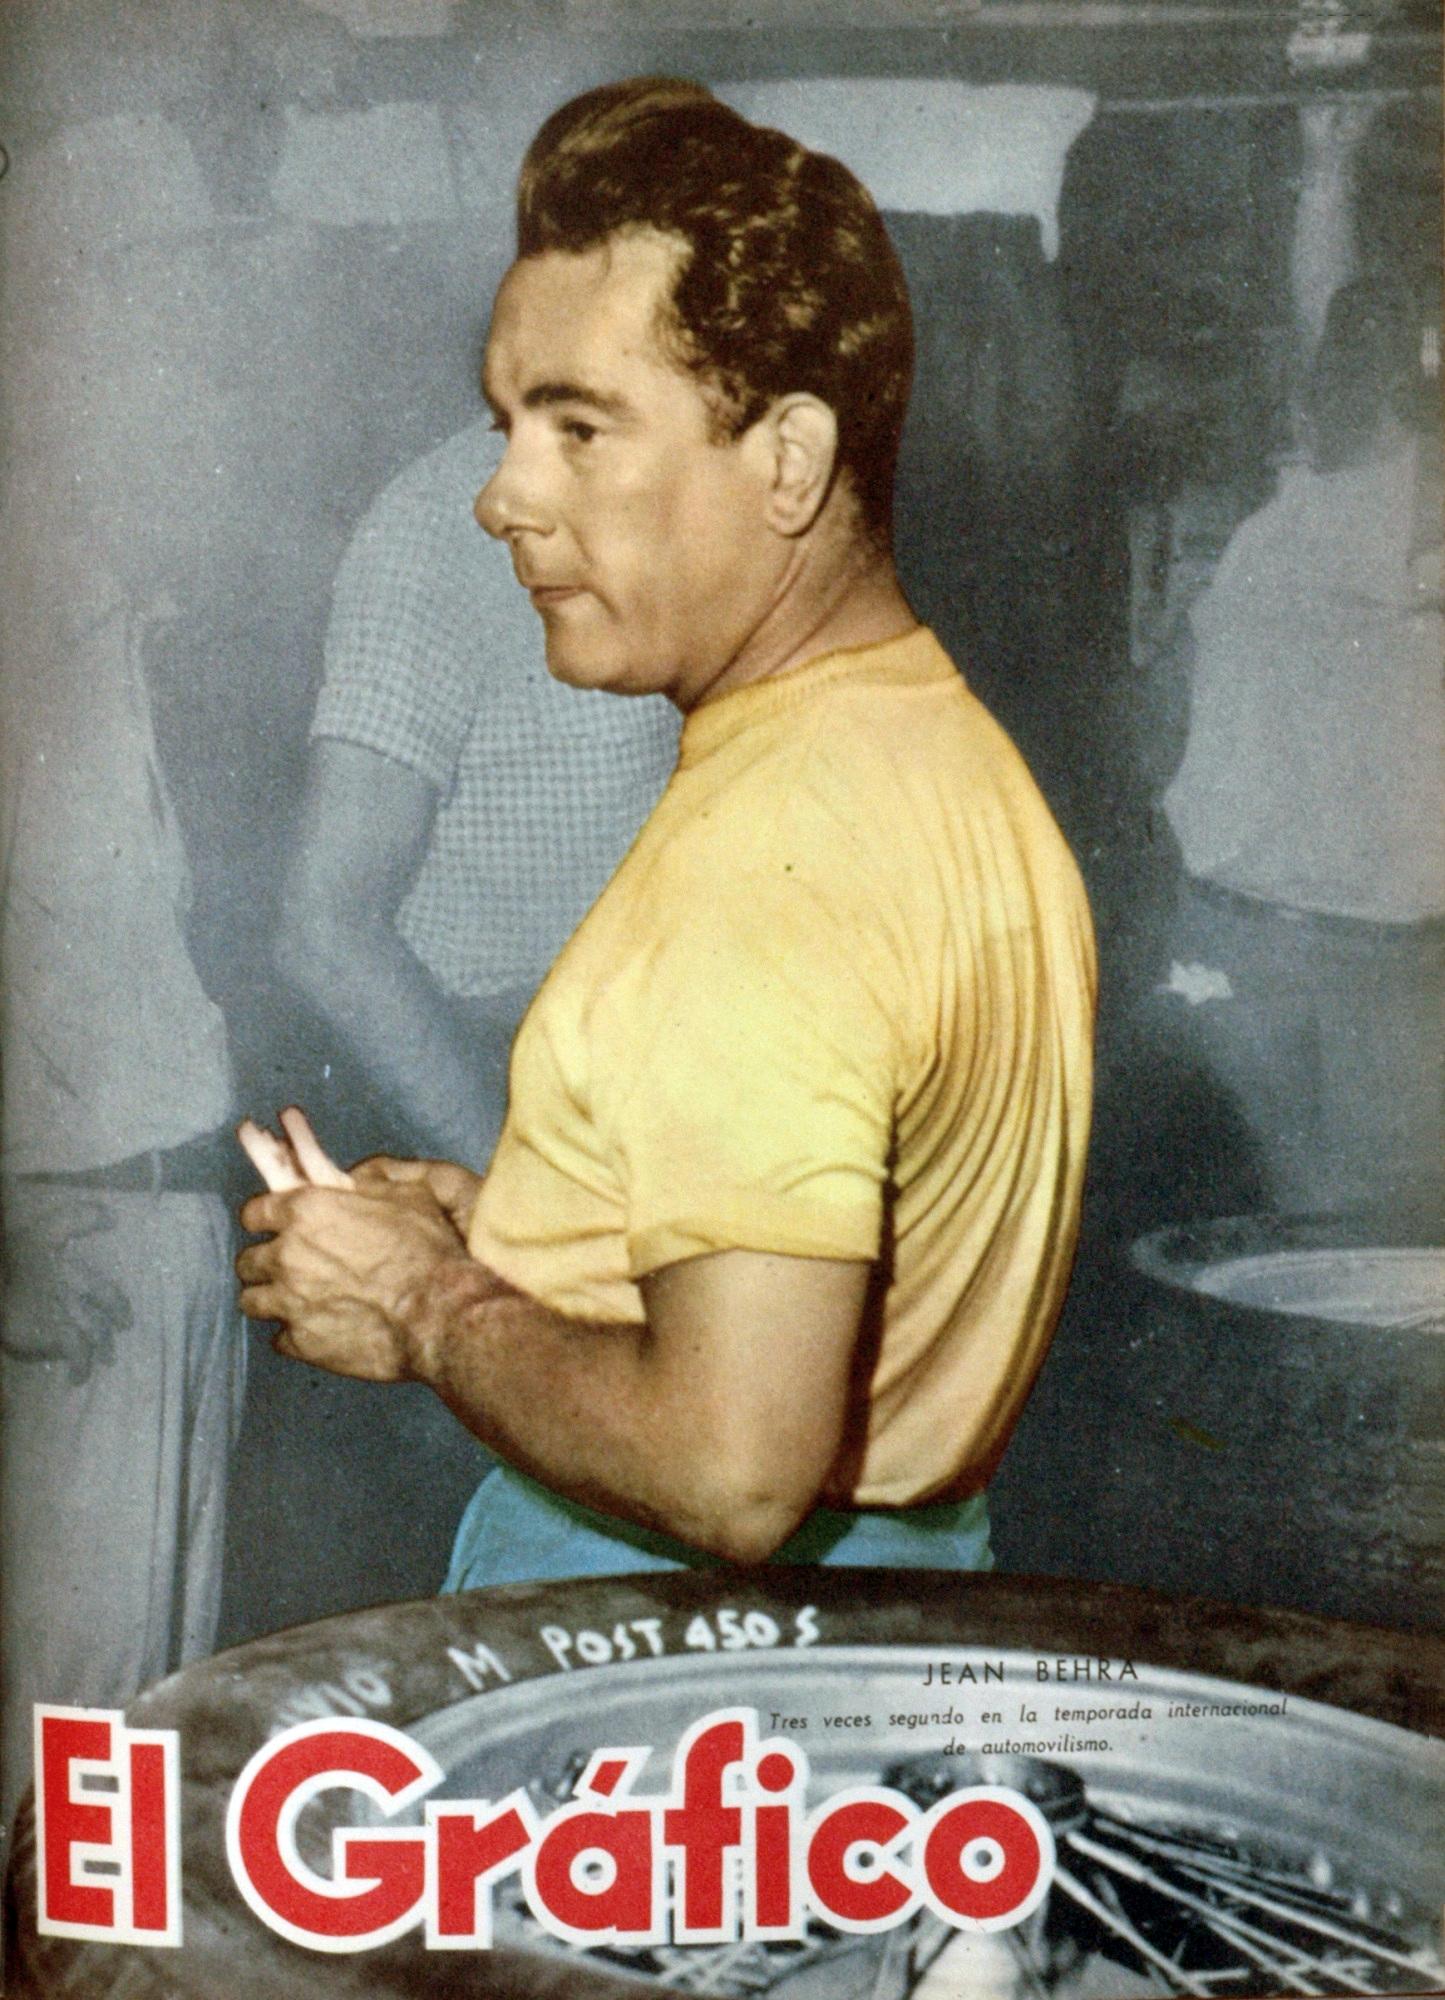 Jean Behra in 1953.